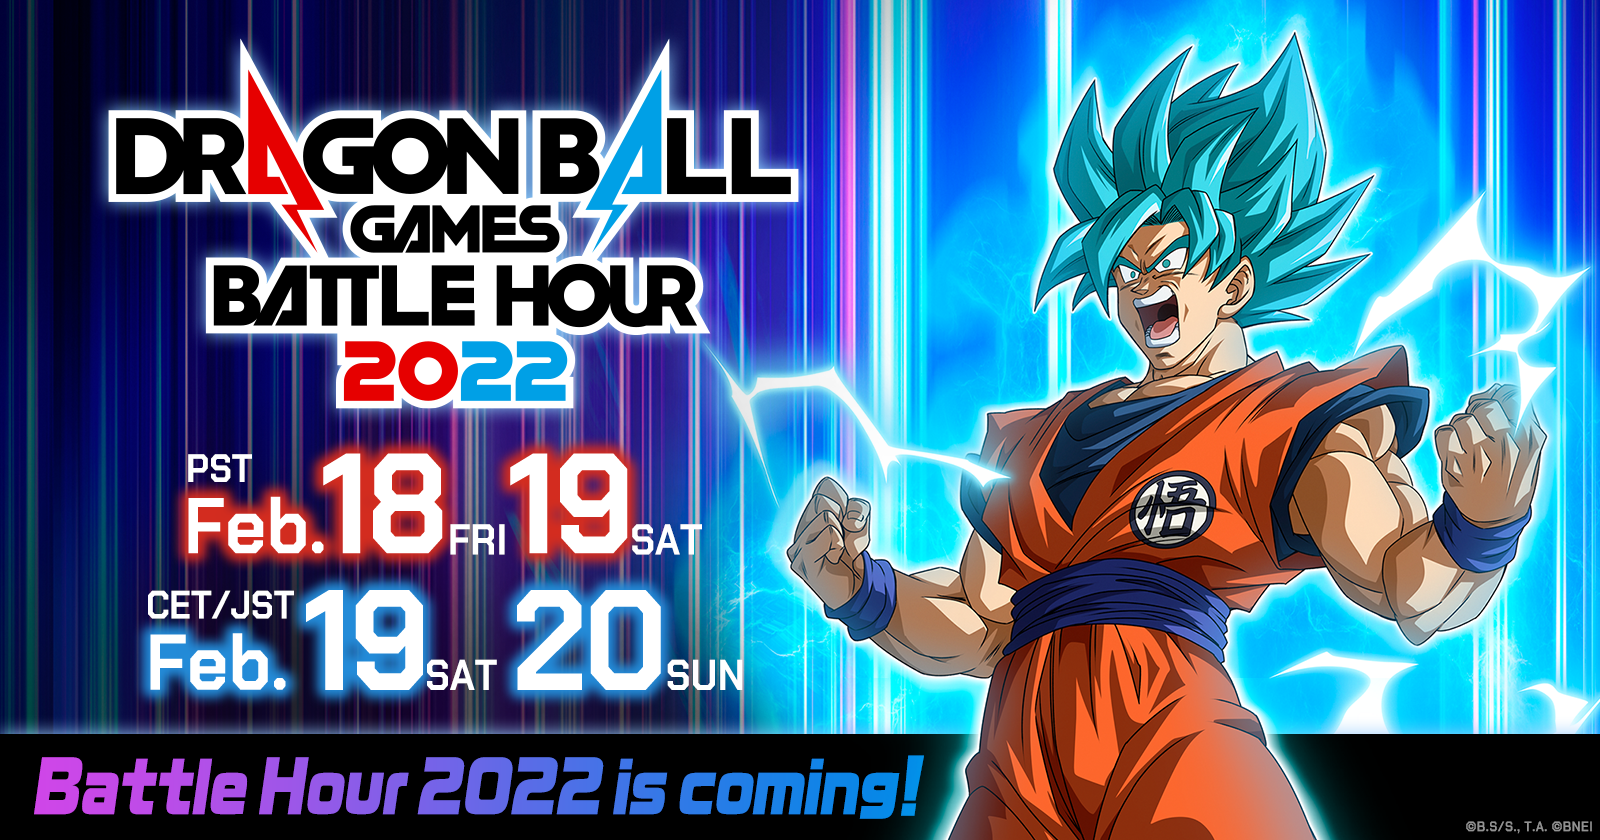 ¡El evento mundial de transmisión en línea "DRAGON BALL Games Battle Hour 2022" se llevará a cabo del 19 al 20 de febrero JST!